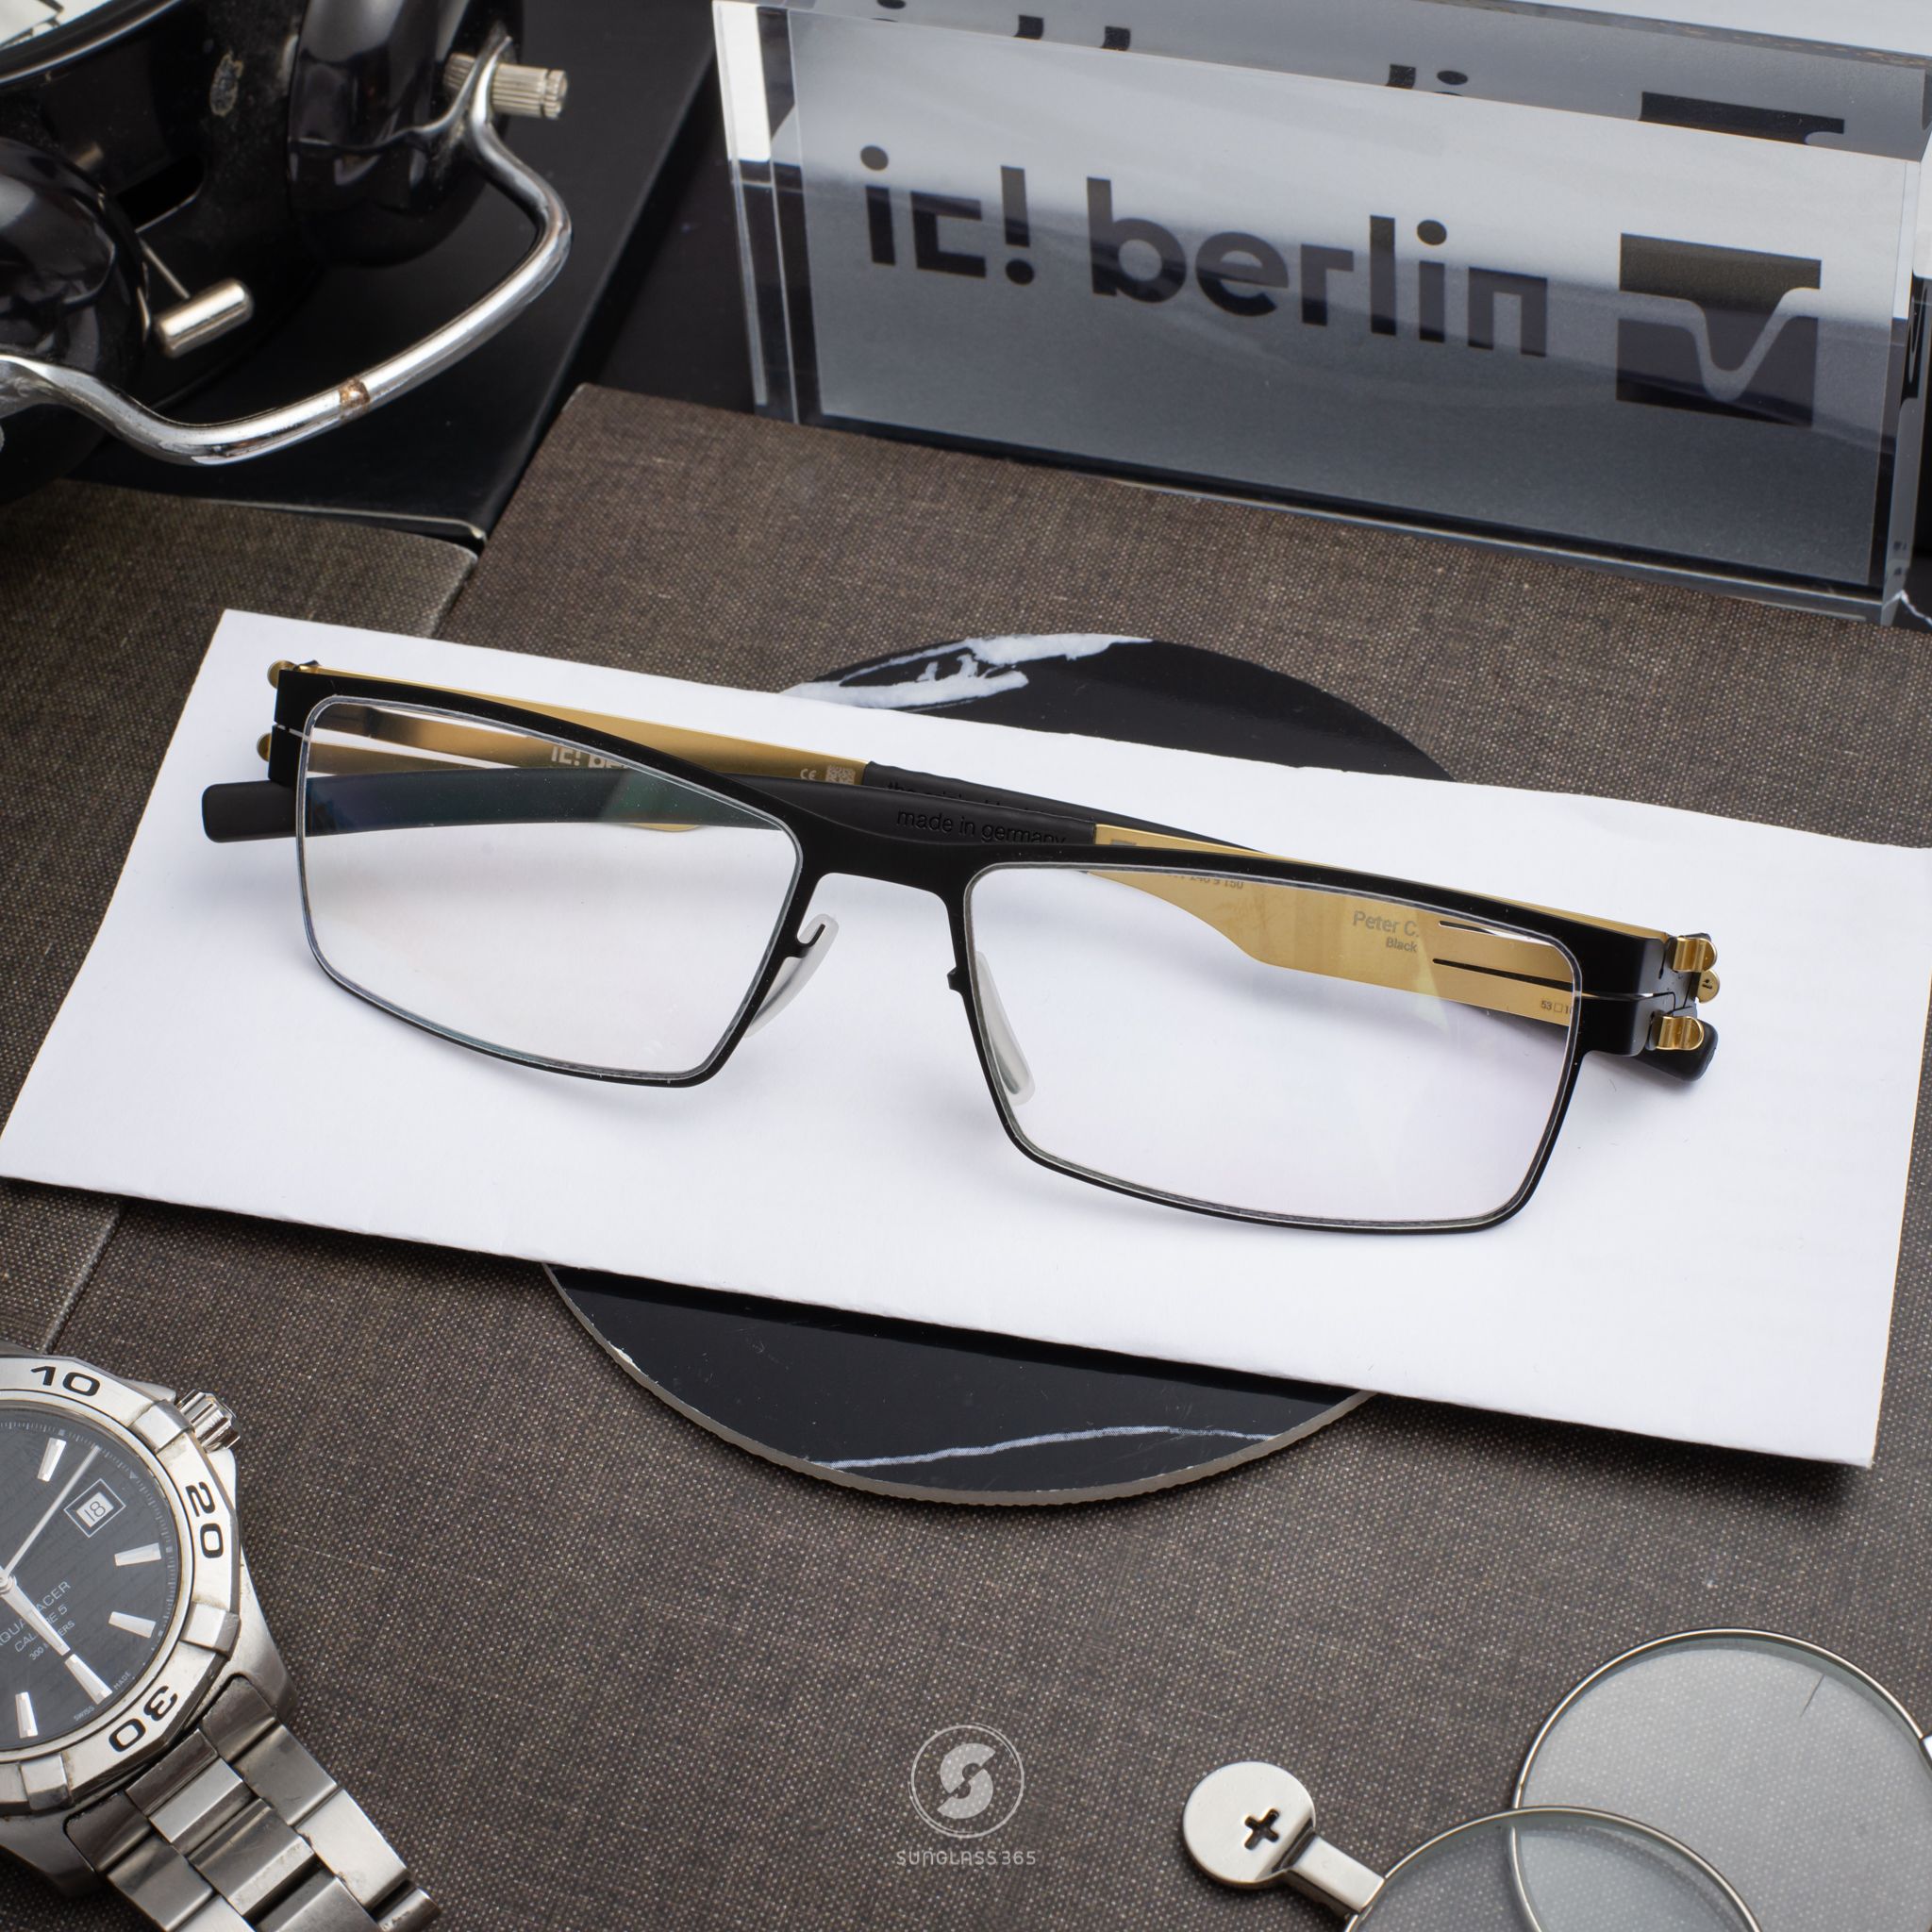  IC! Berlin Peter C eyeglasses 